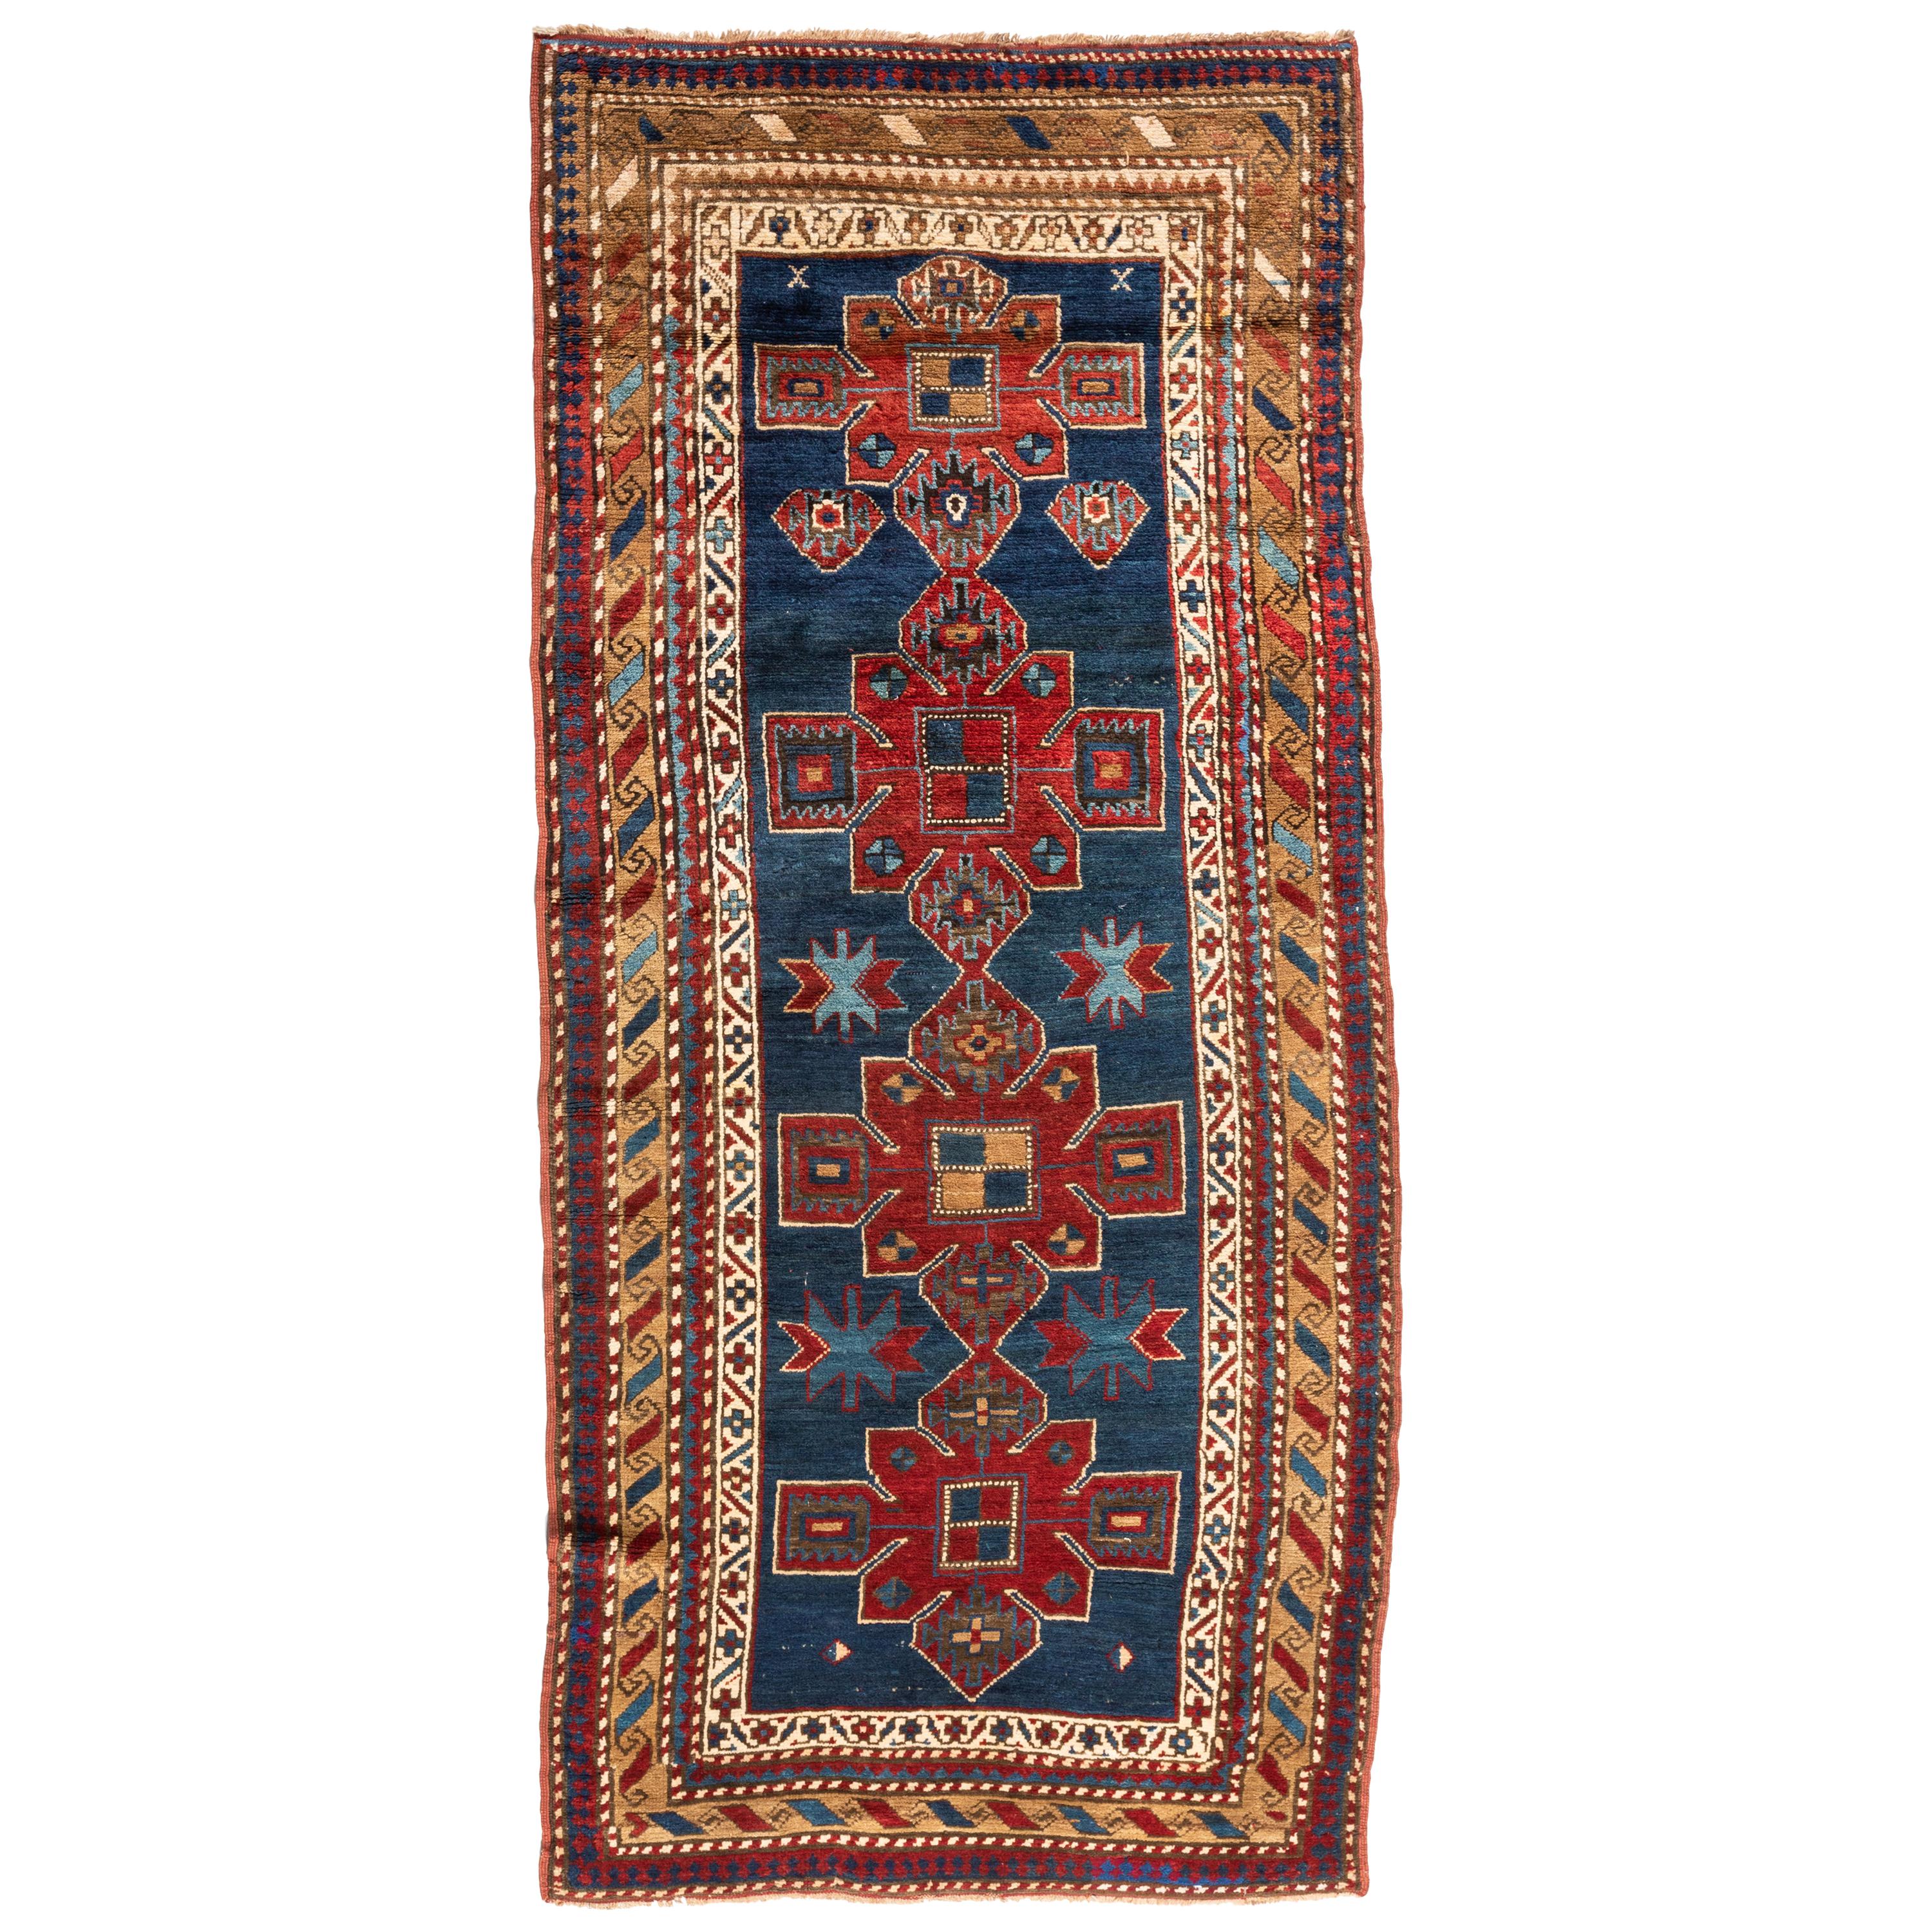 Tapis antique bleu marine rouge or tribal géométrique caucasien Kazak circa 1930s